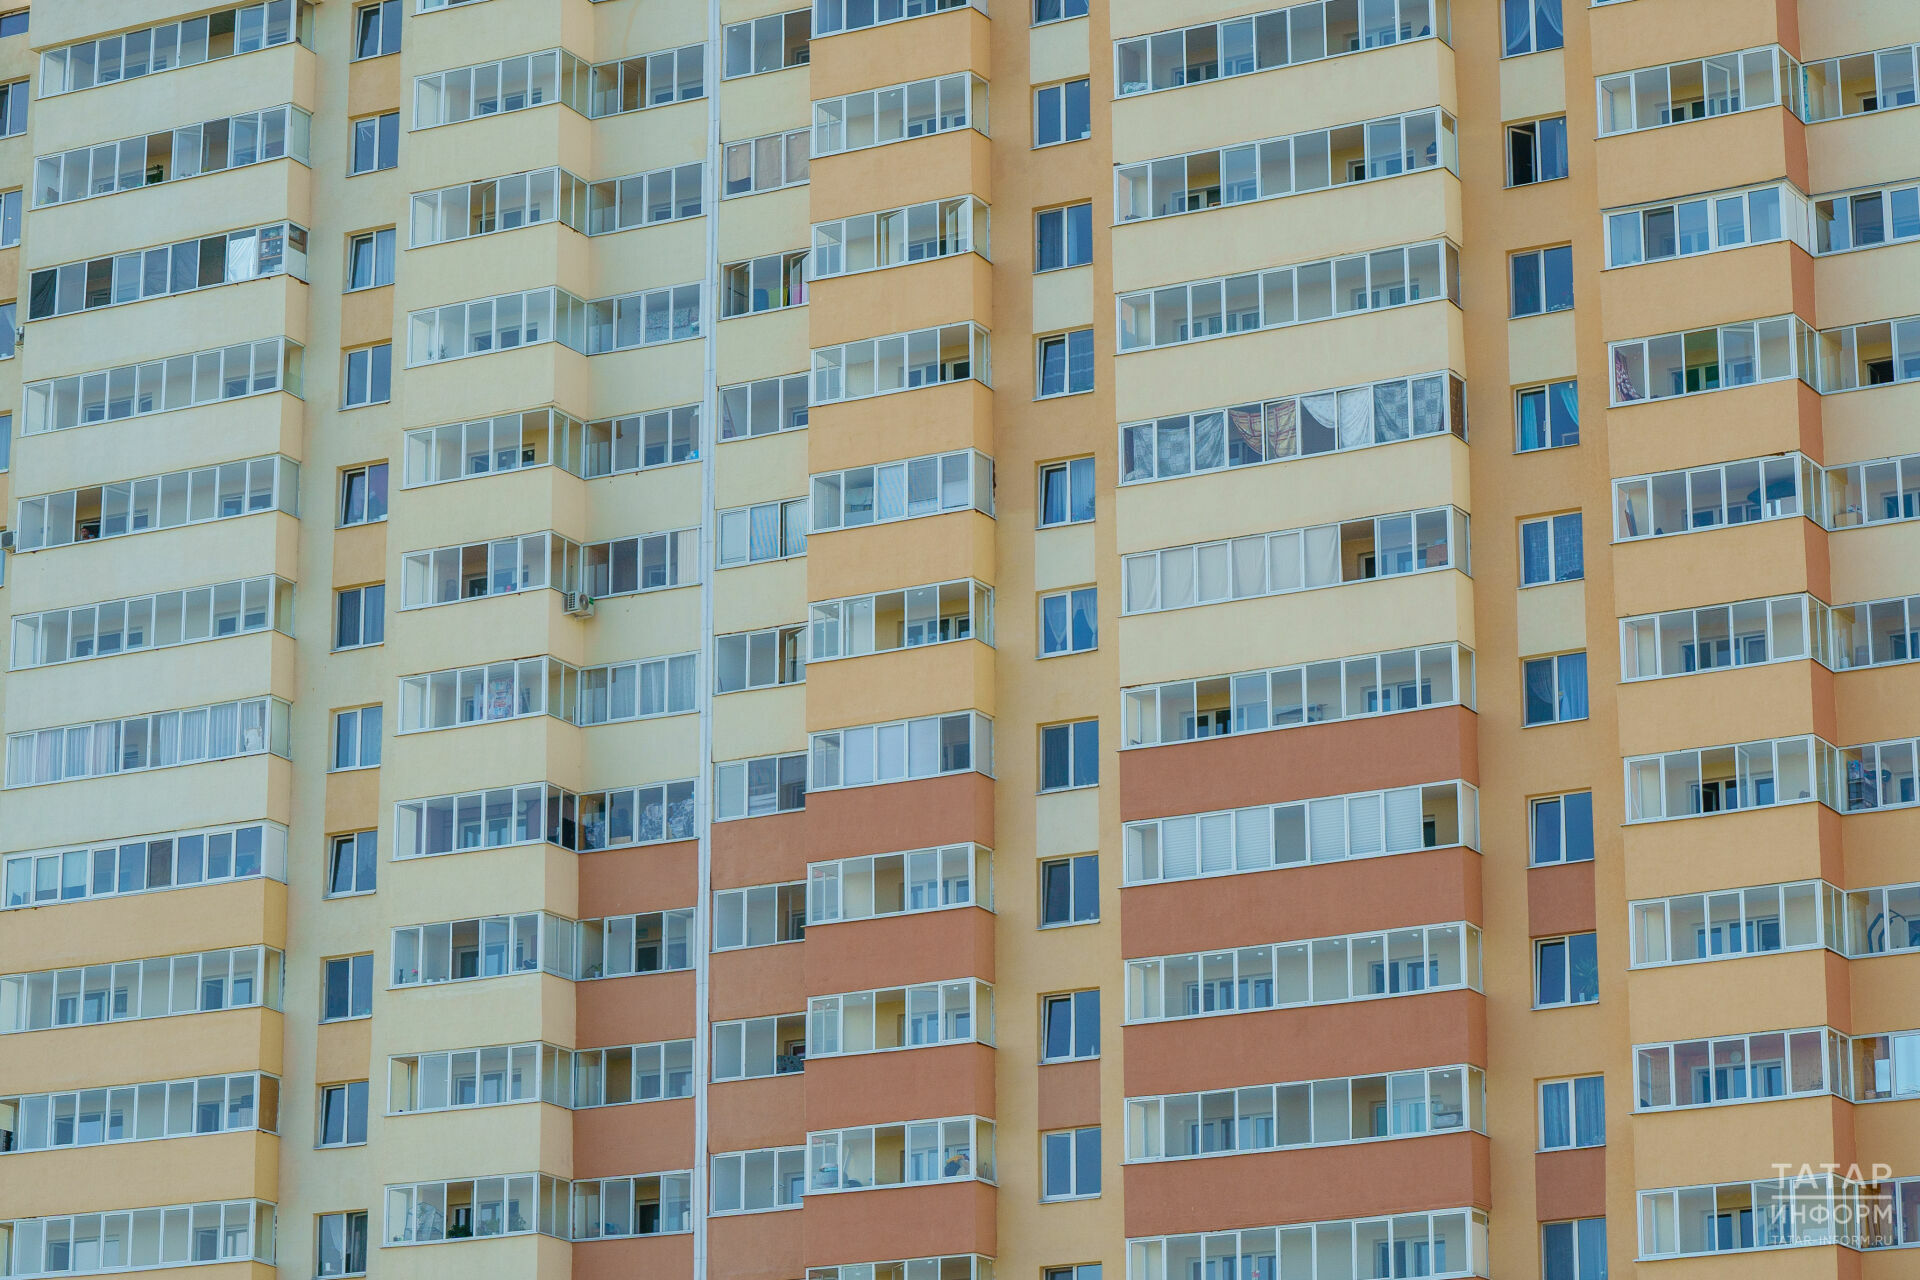 На тысячу жителей Татарстана приходится 34,8 ипотеки, взятых в последний год